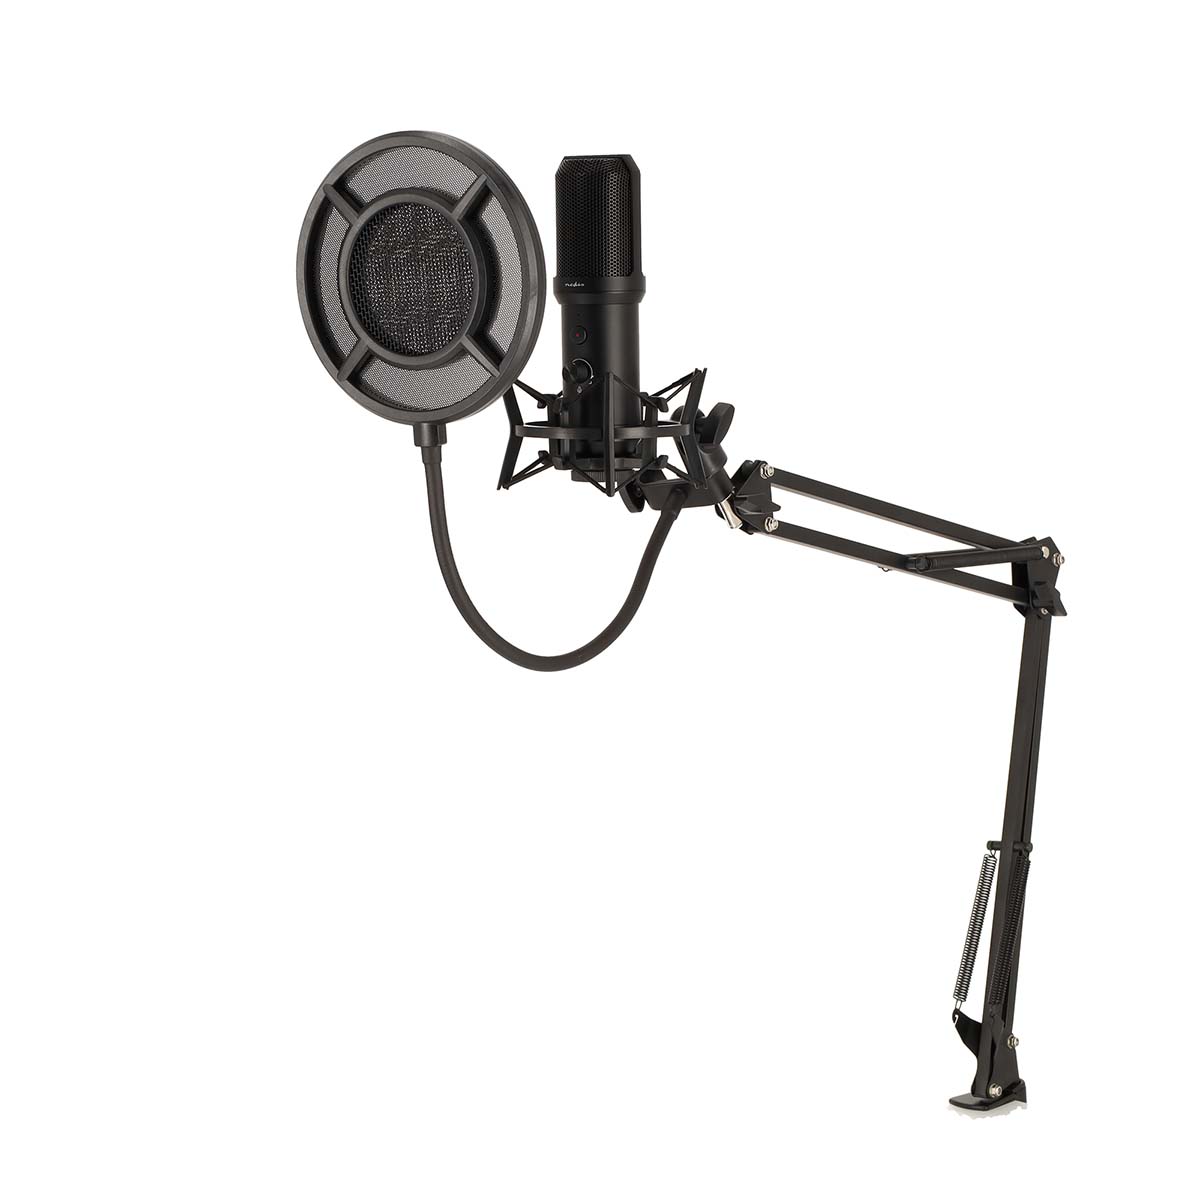 Nedis GSMIC410BK stolní profi mikrofon s ramenem 360°, anti-shock držák, vypínač, POP filtr, USB